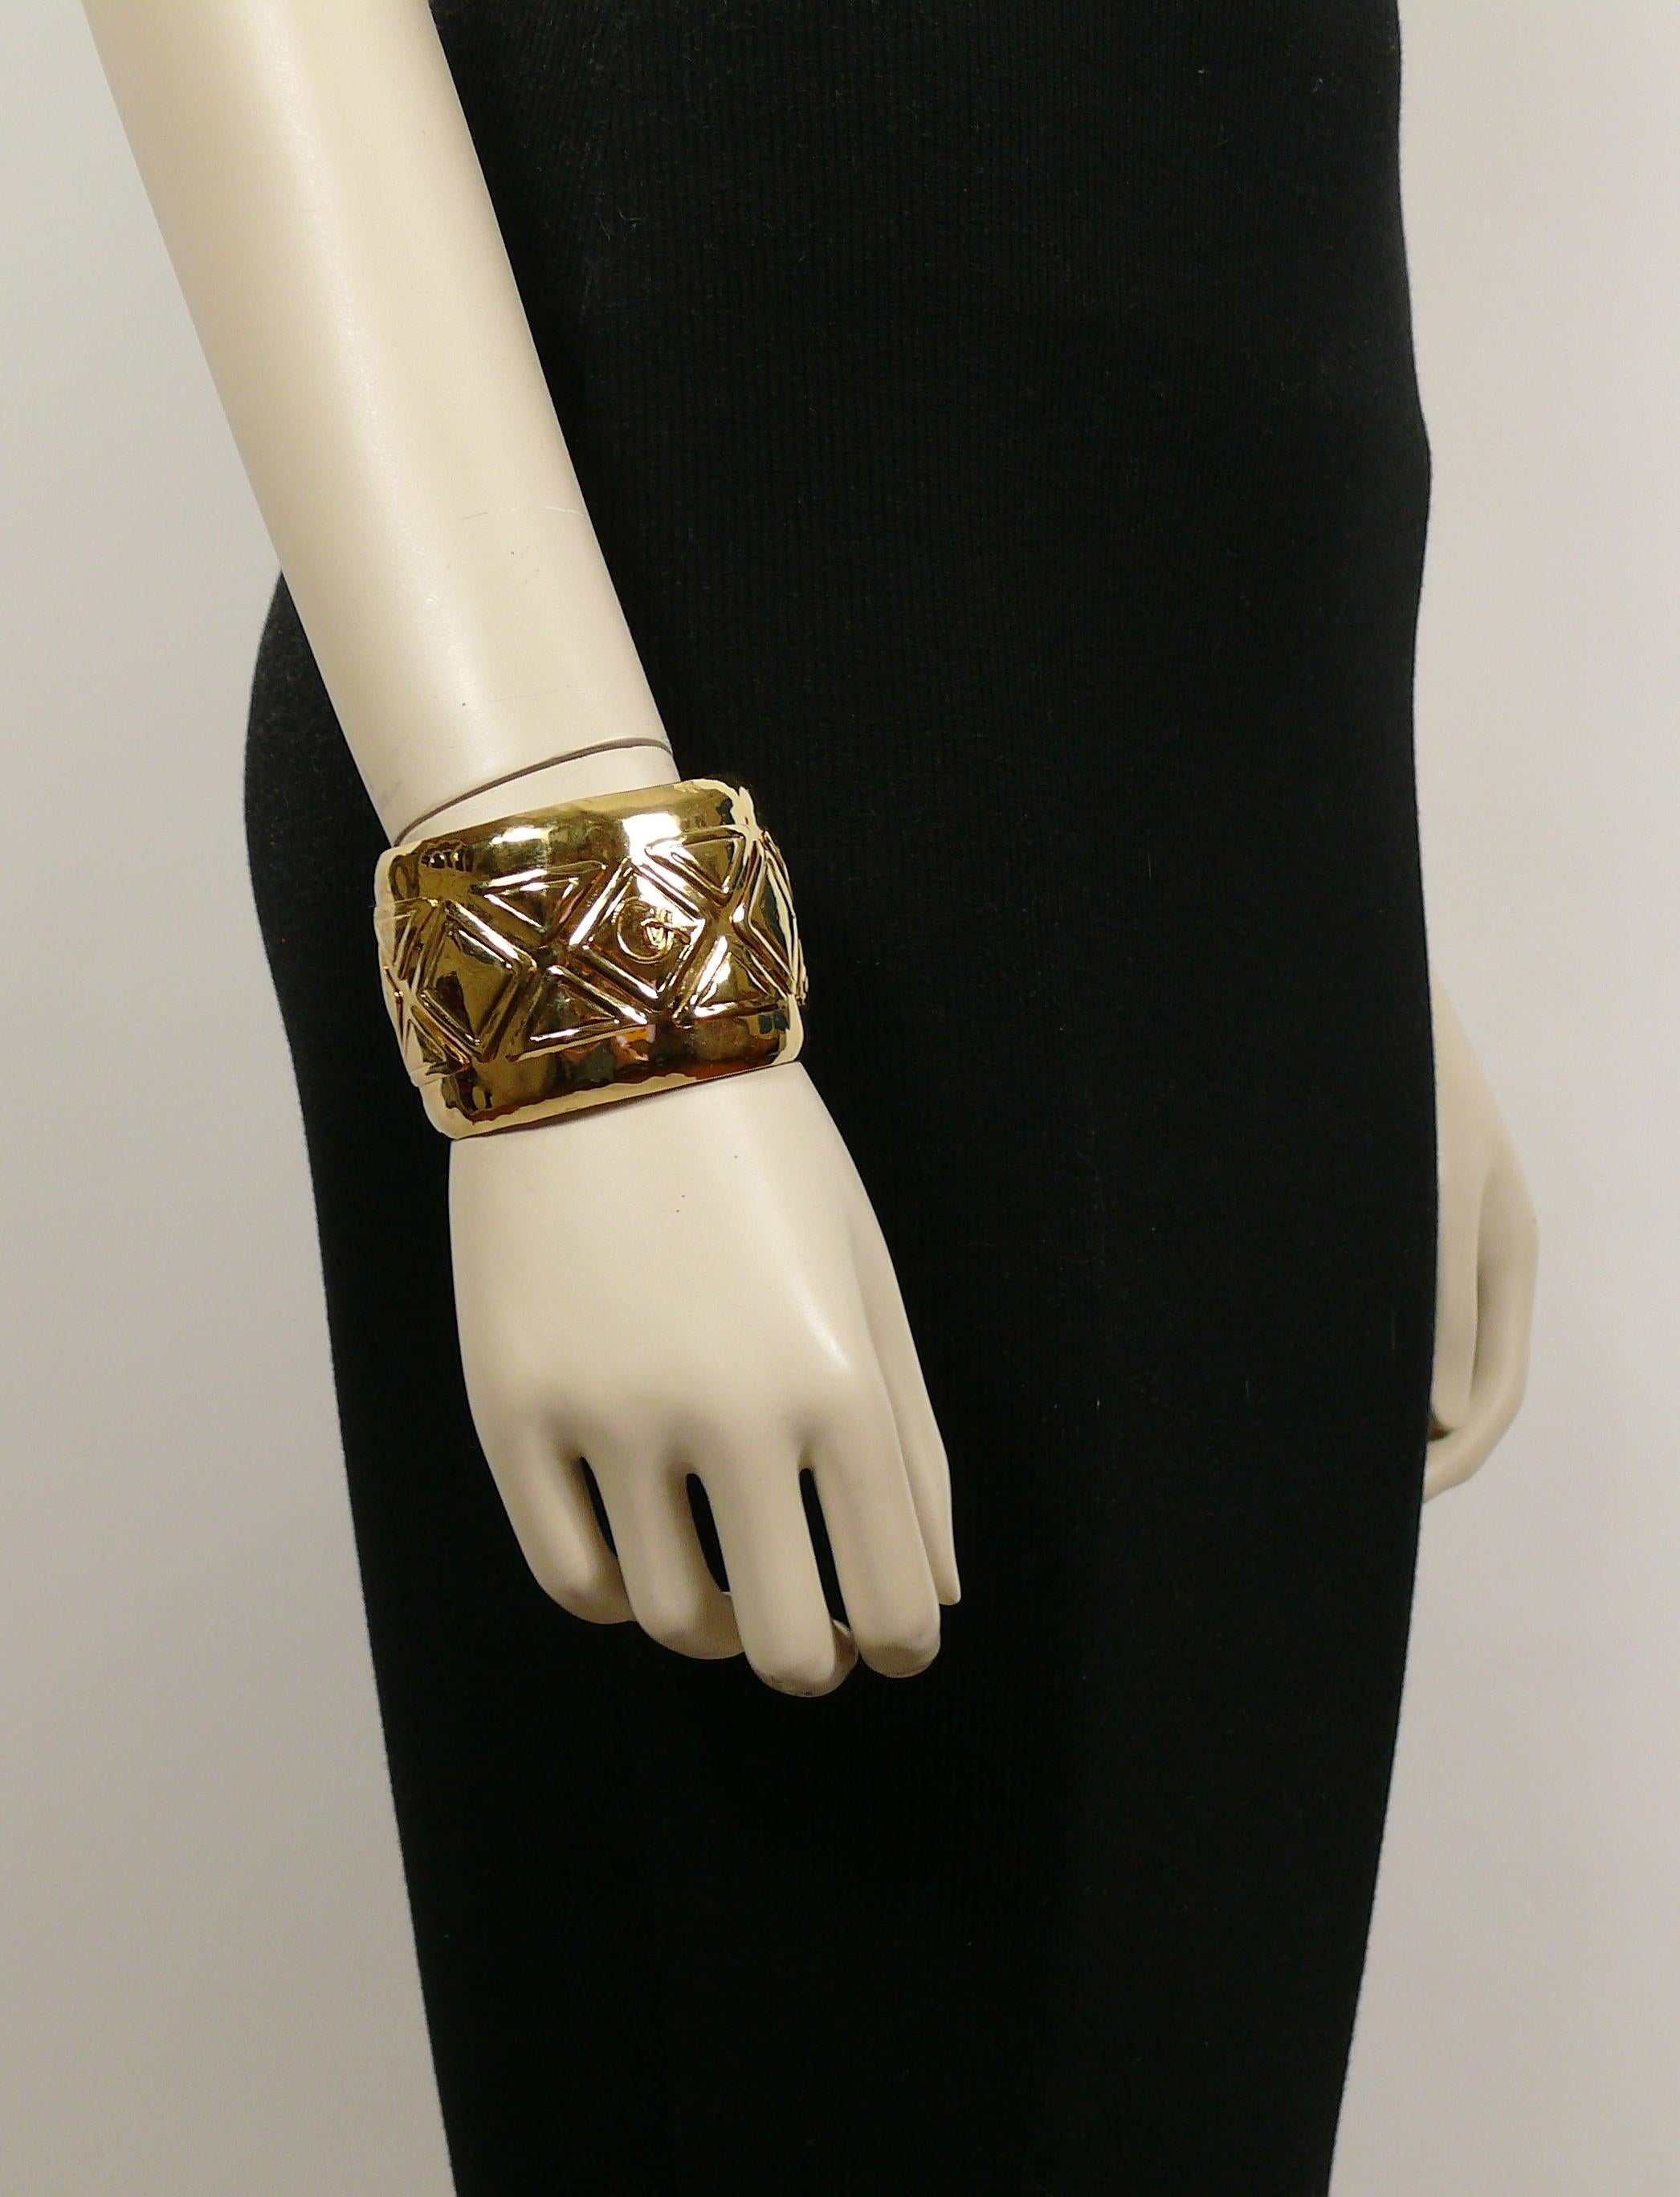 Le bracelet CHRISTIAN LACROIX est un bracelet vintage en or, avec un motif géométrique et le logo CL.

Marqué CHRISTIAN LACROIX CL Made in France.

Mesures indicatives : mesures intérieures d'environ 6,2 cm x 5,1 cm (2,44 pouces x 2 pouces) /